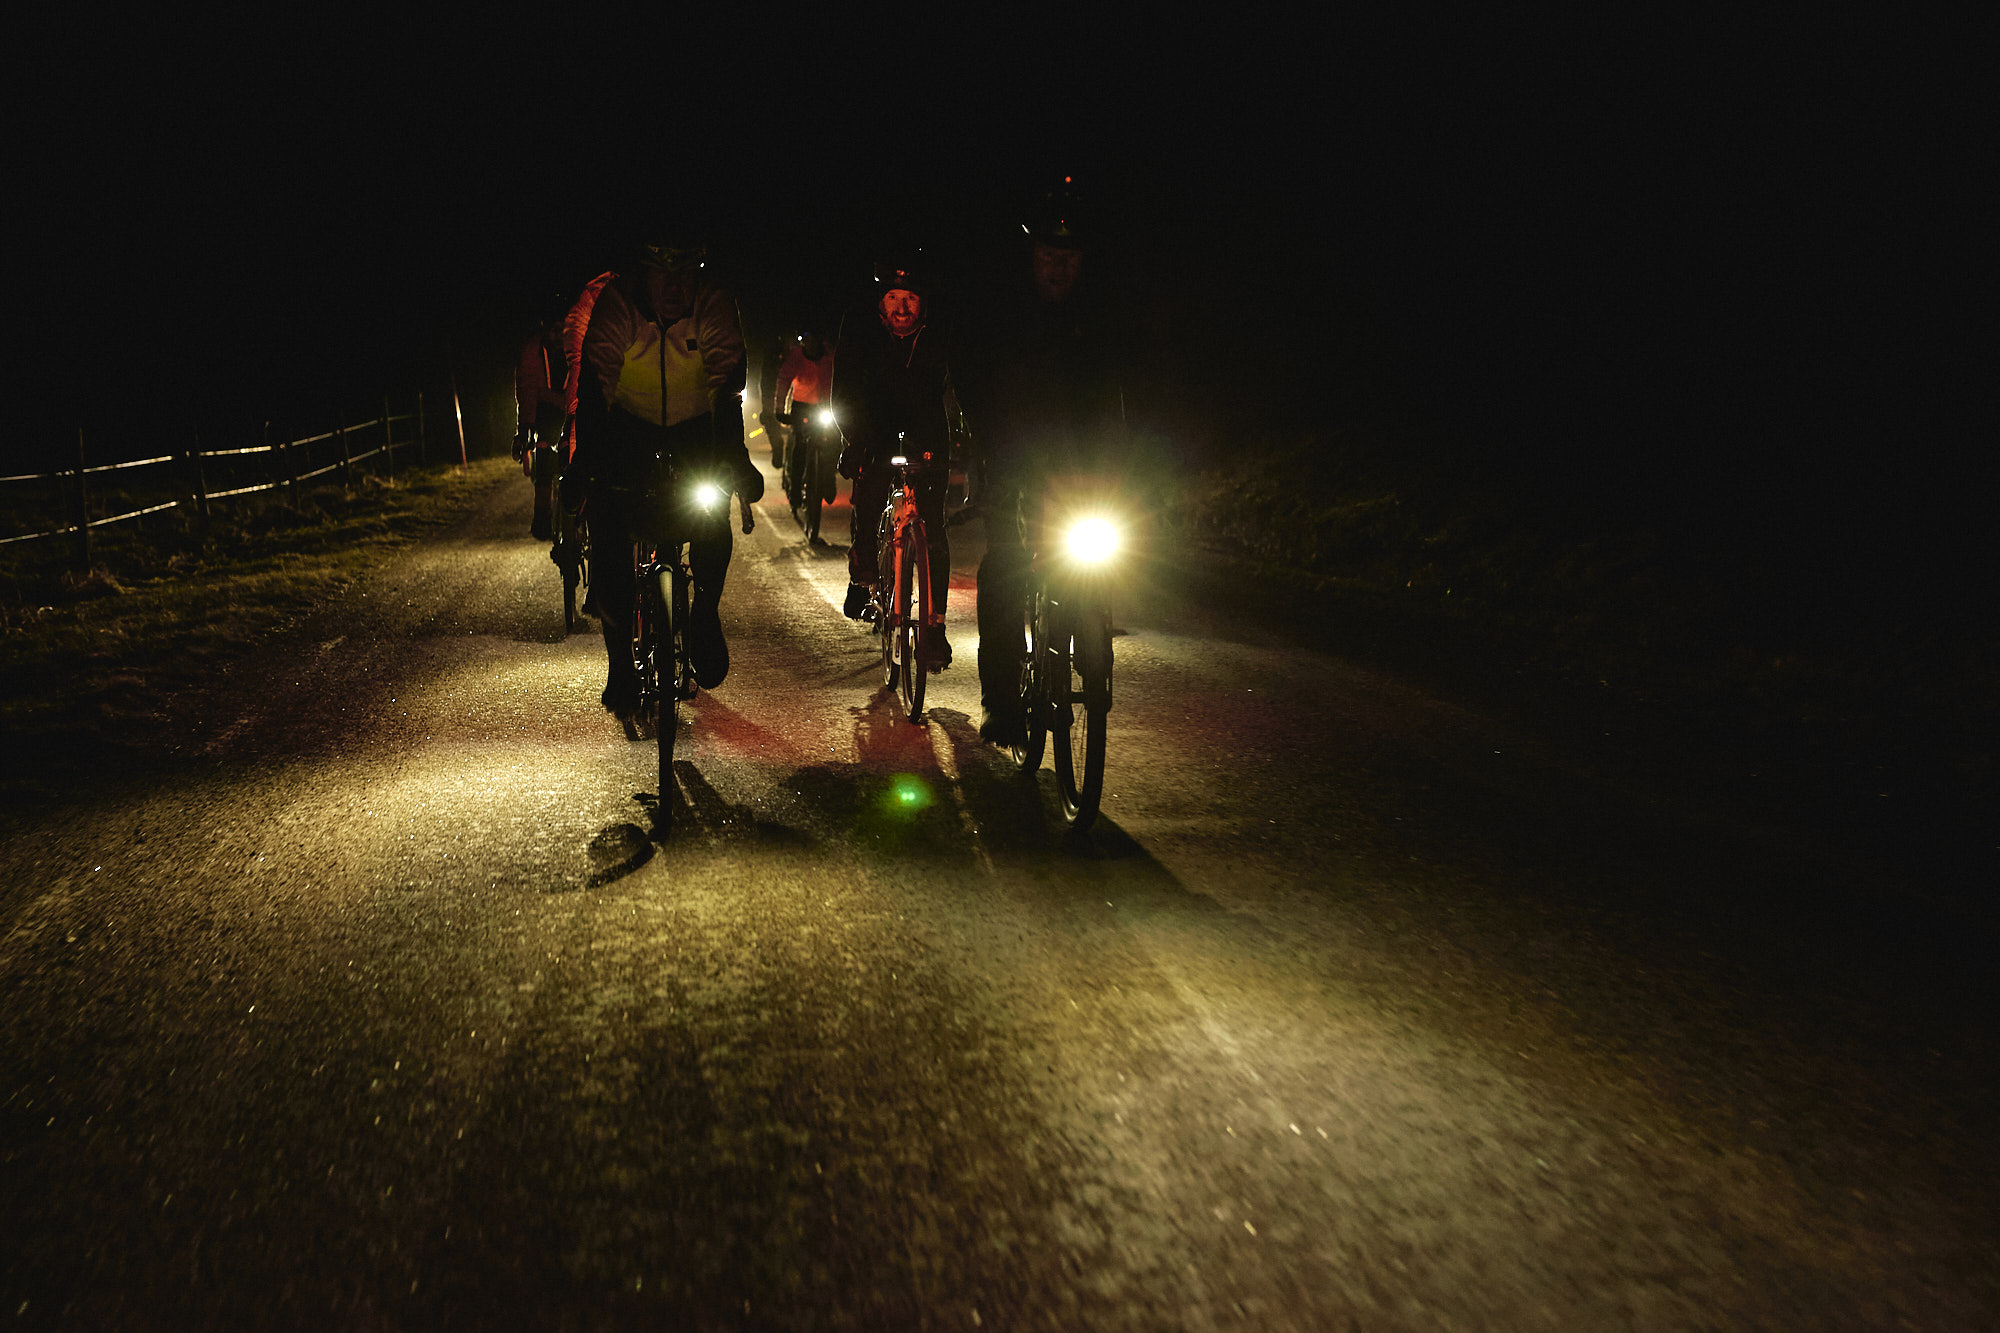 Cyklisterna höll i gång från tidig morgon till sen kväll, vilket innebar en hel del cykeltid i mörker.